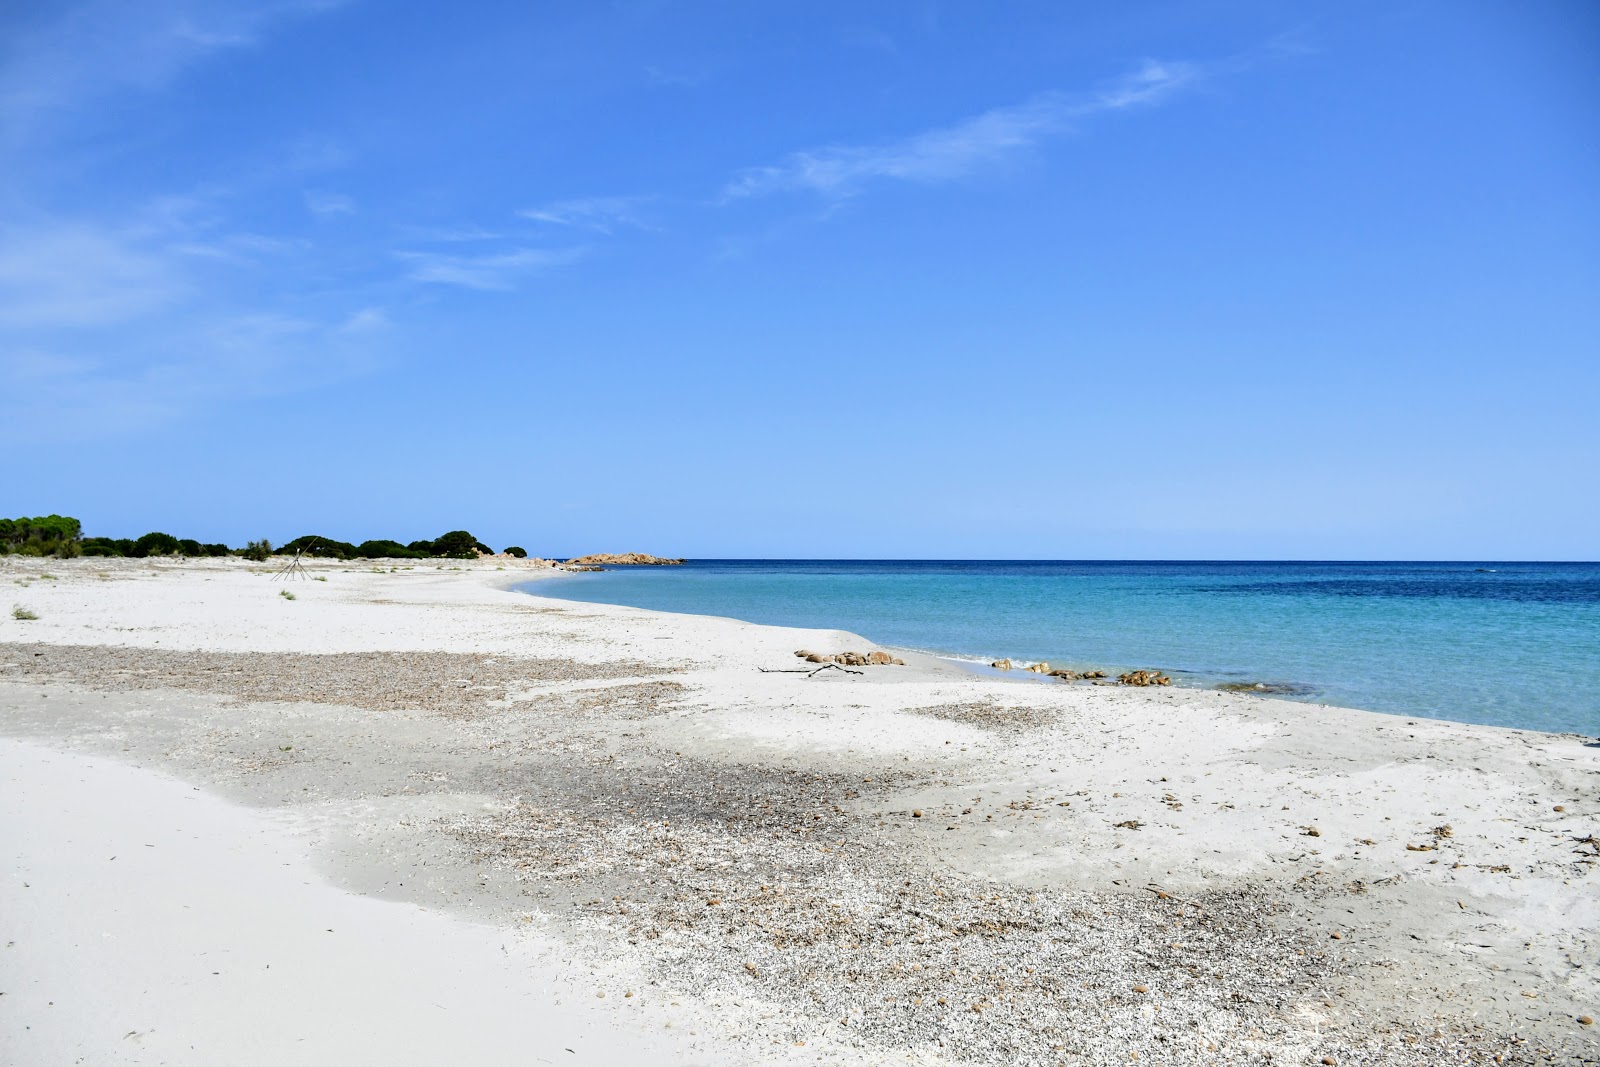 Foto de Spiaggia Cannazzellu ubicado en área natural